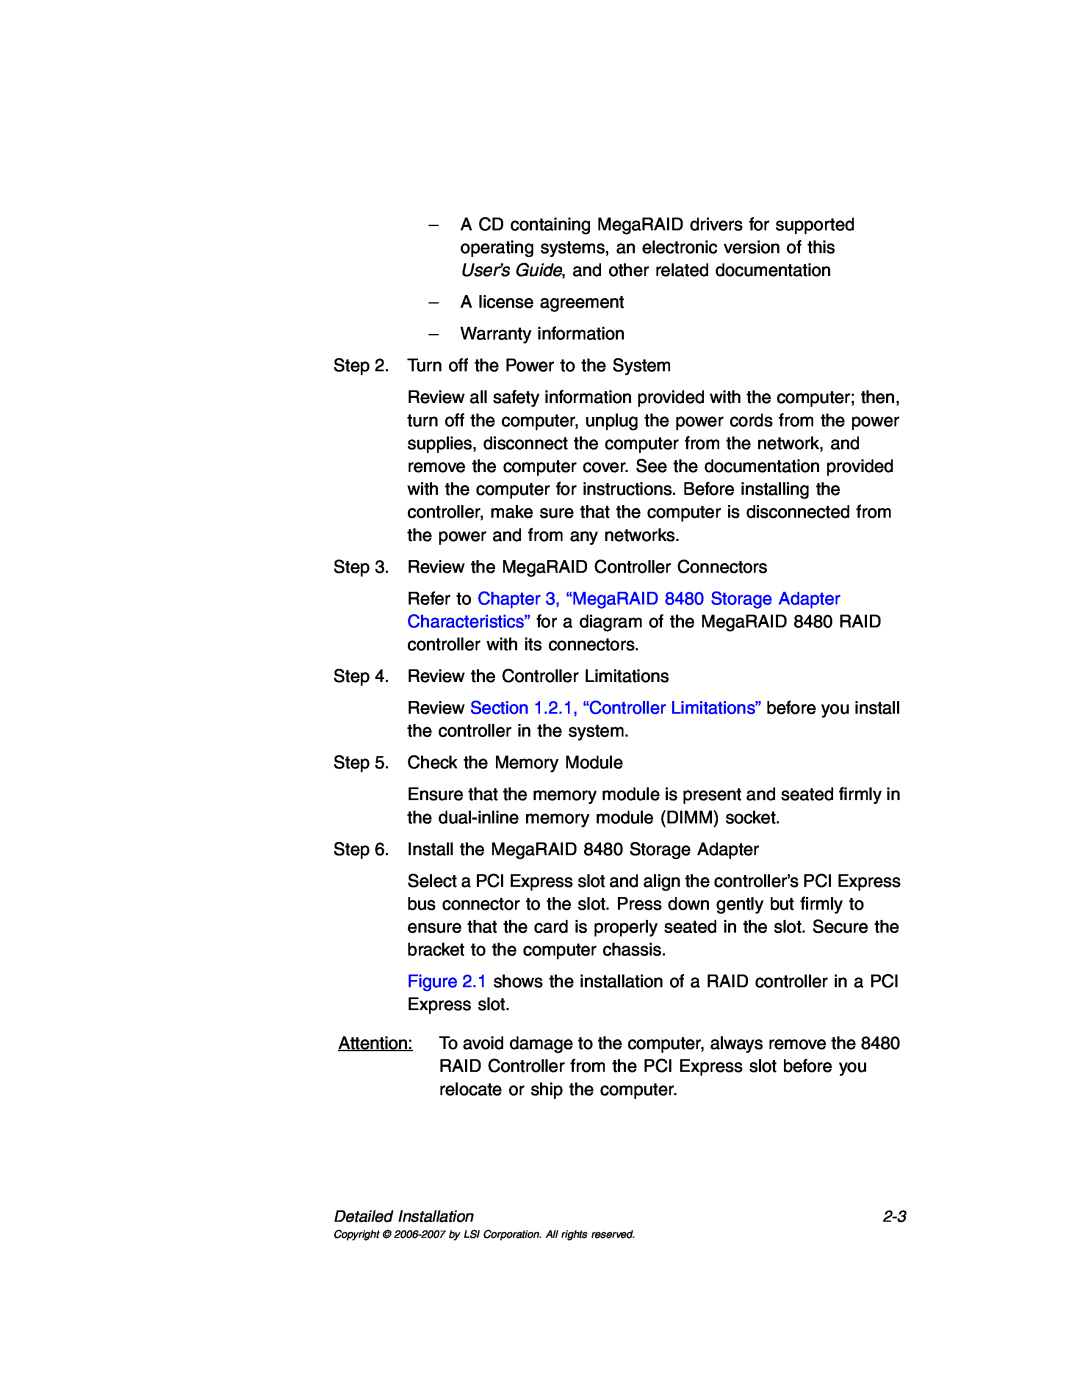 IBM MegaRAID 8480 manual A license agreement Warranty information 